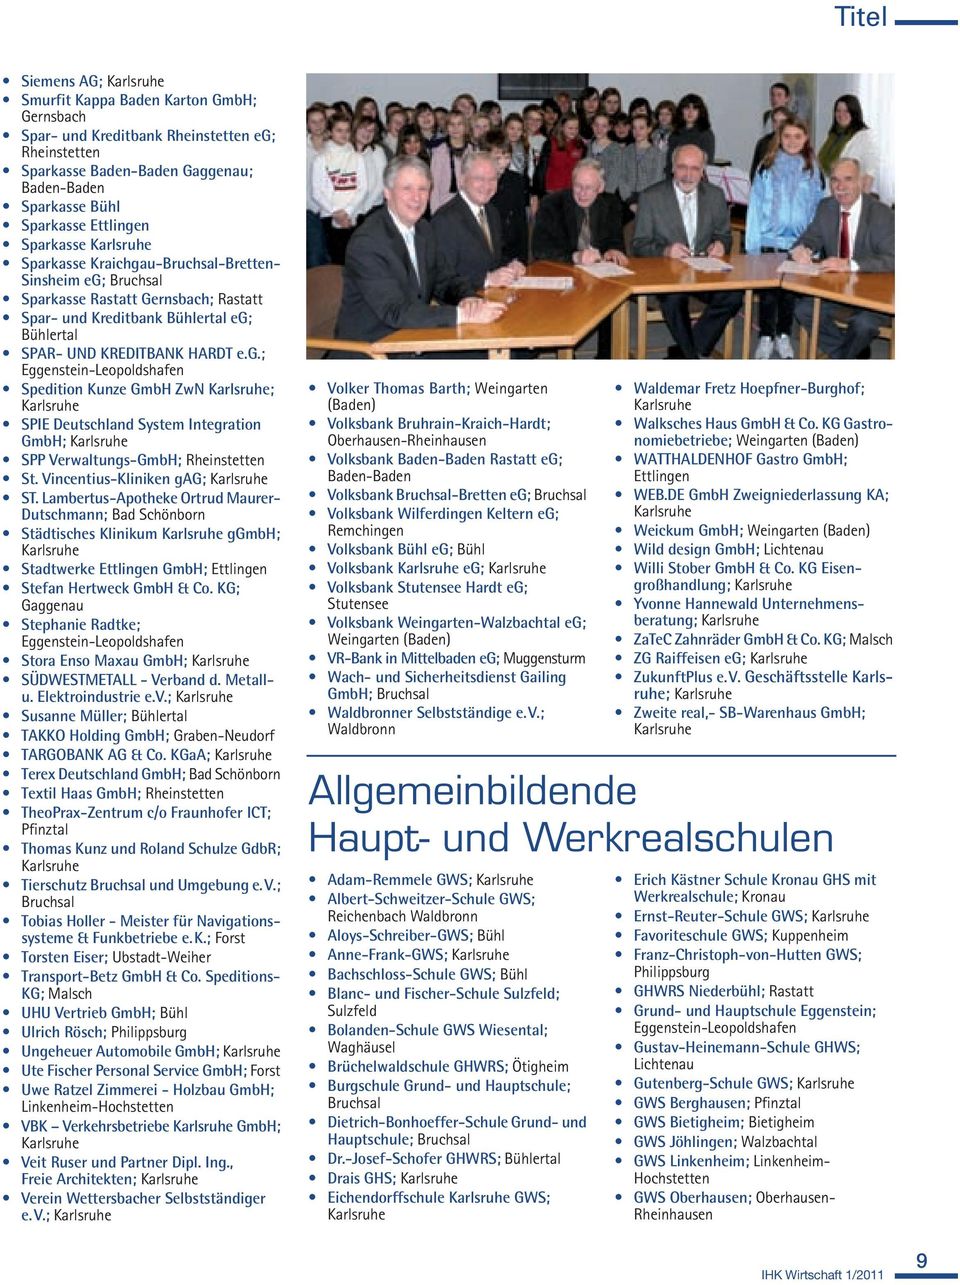 e.g.; Eggenstein-Leopoldshafen Spedition Kunze GmbH ZwN Karlsruhe; Karlsruhe SPIE Deutschland System Integration GmbH; Karlsruhe SPP Verwaltungs-GmbH; Rheinstetten St.